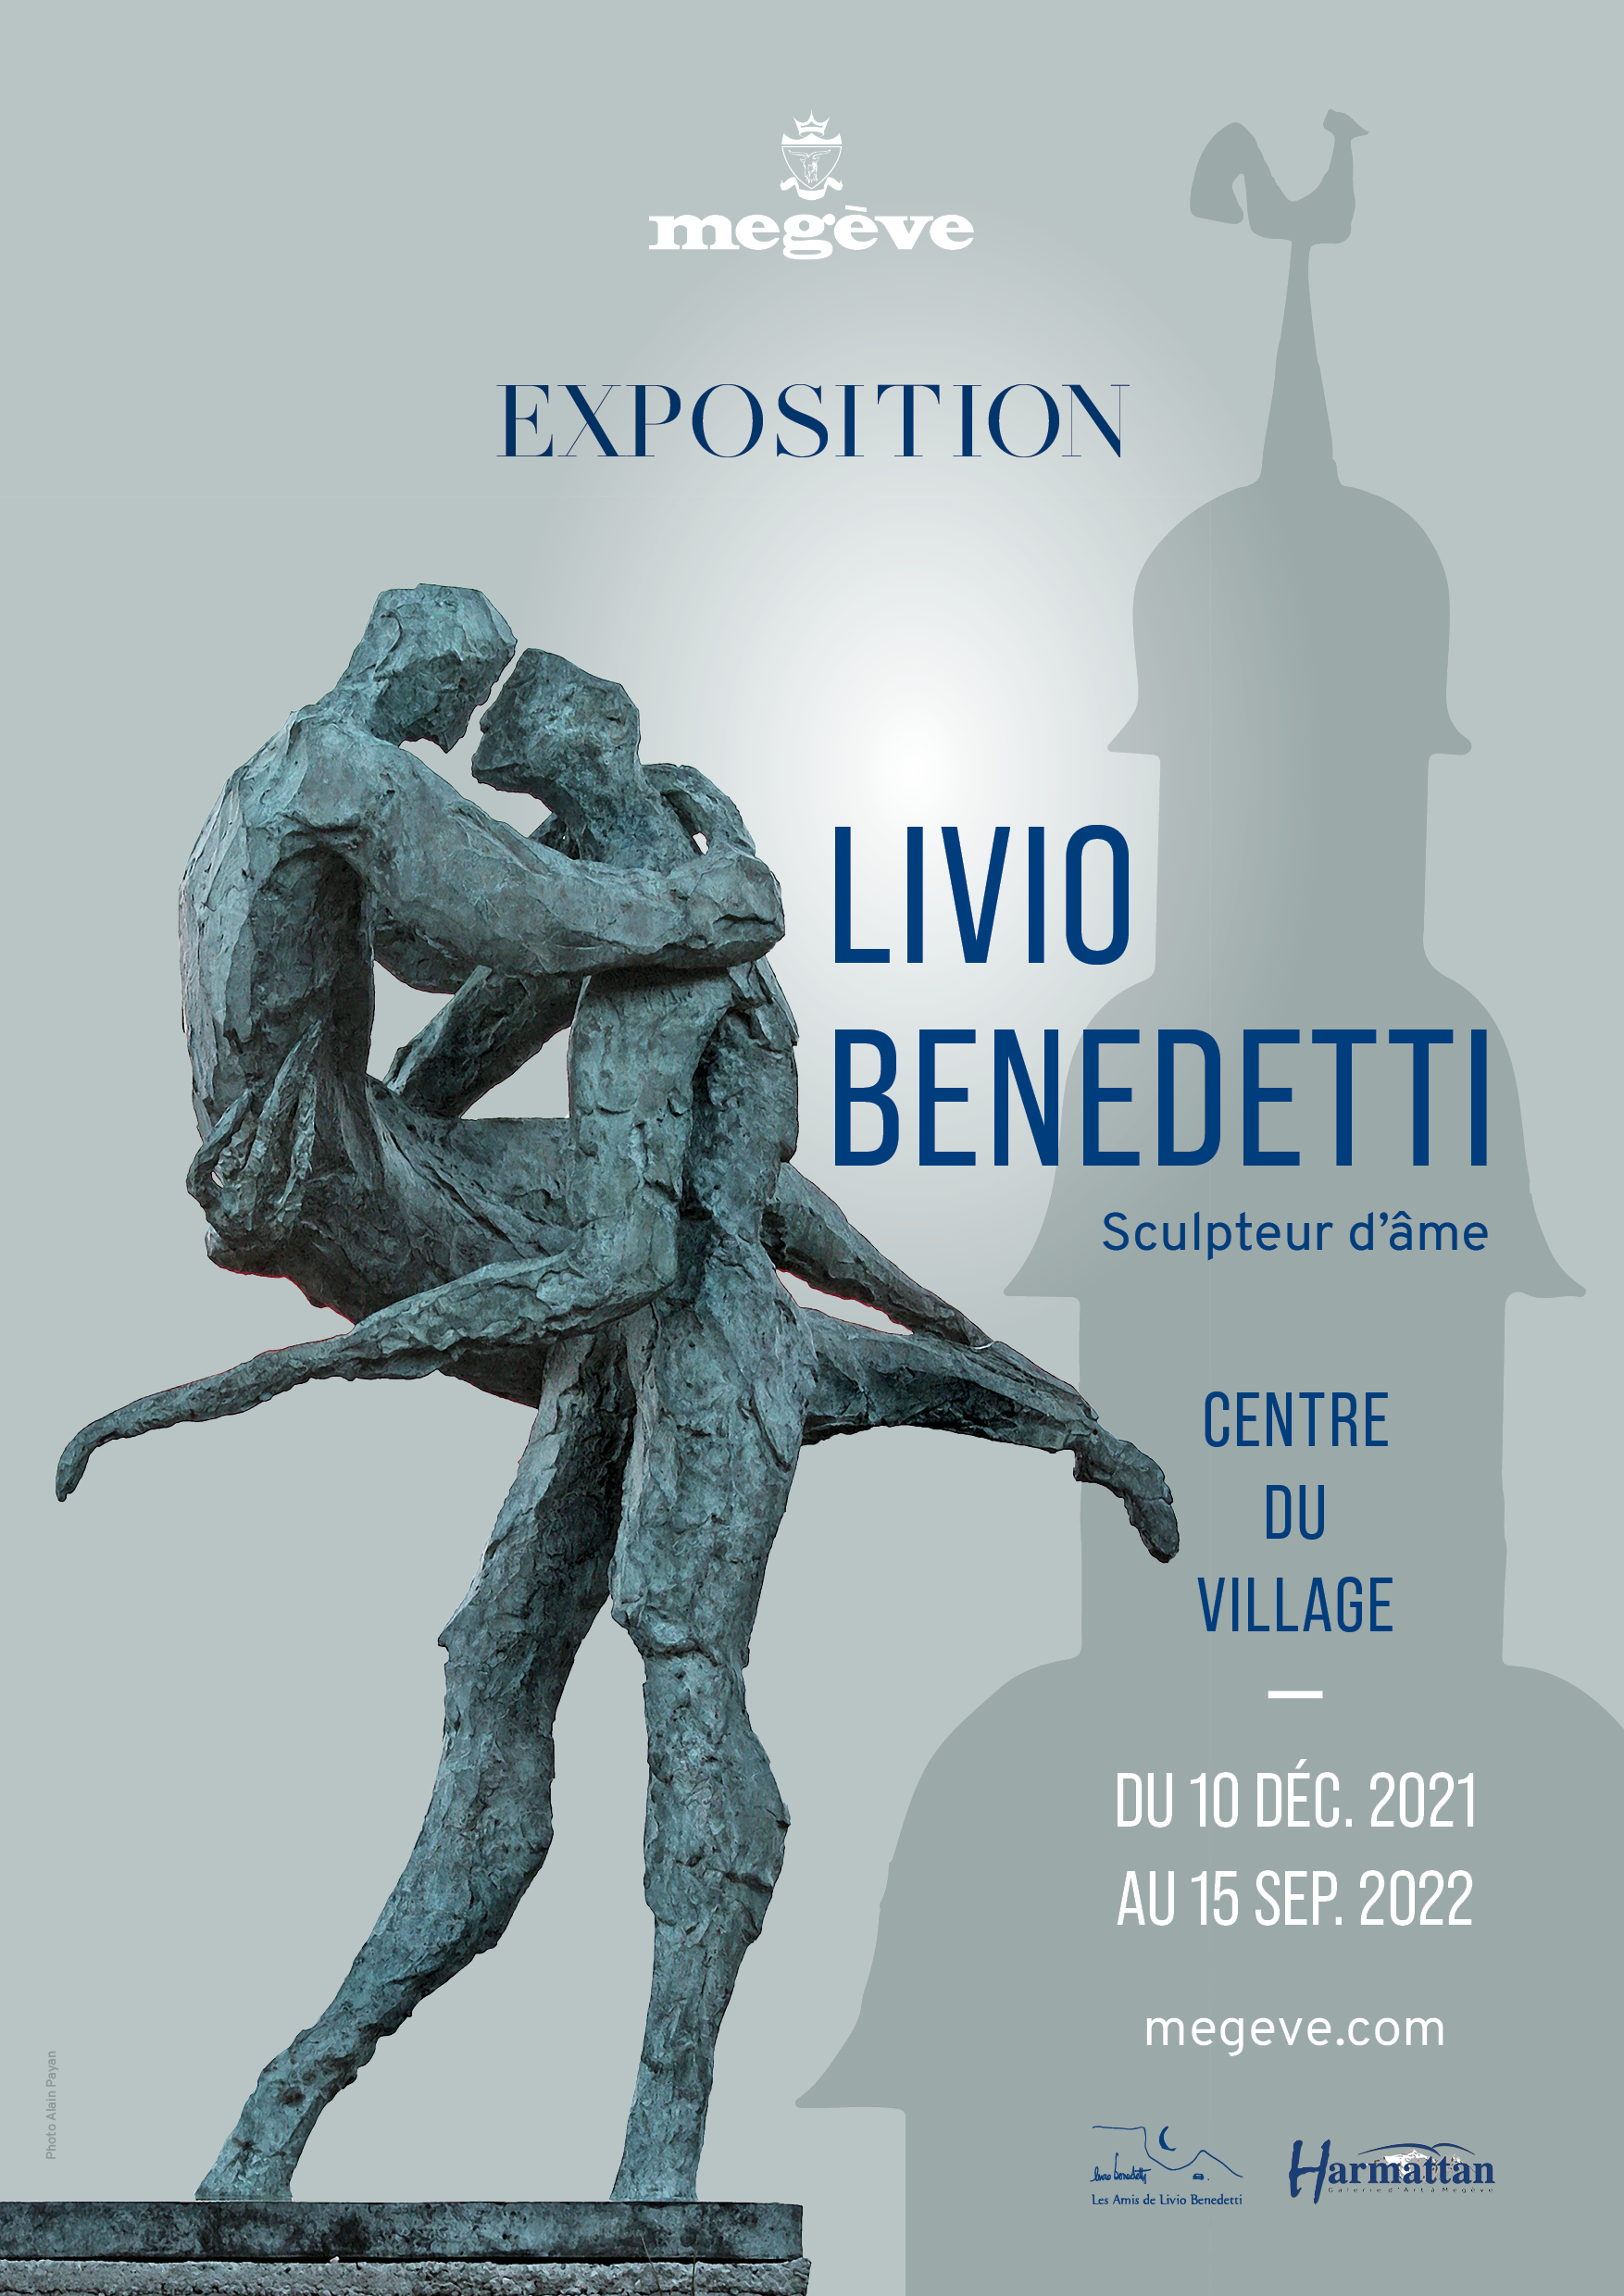 Livio Benedetti